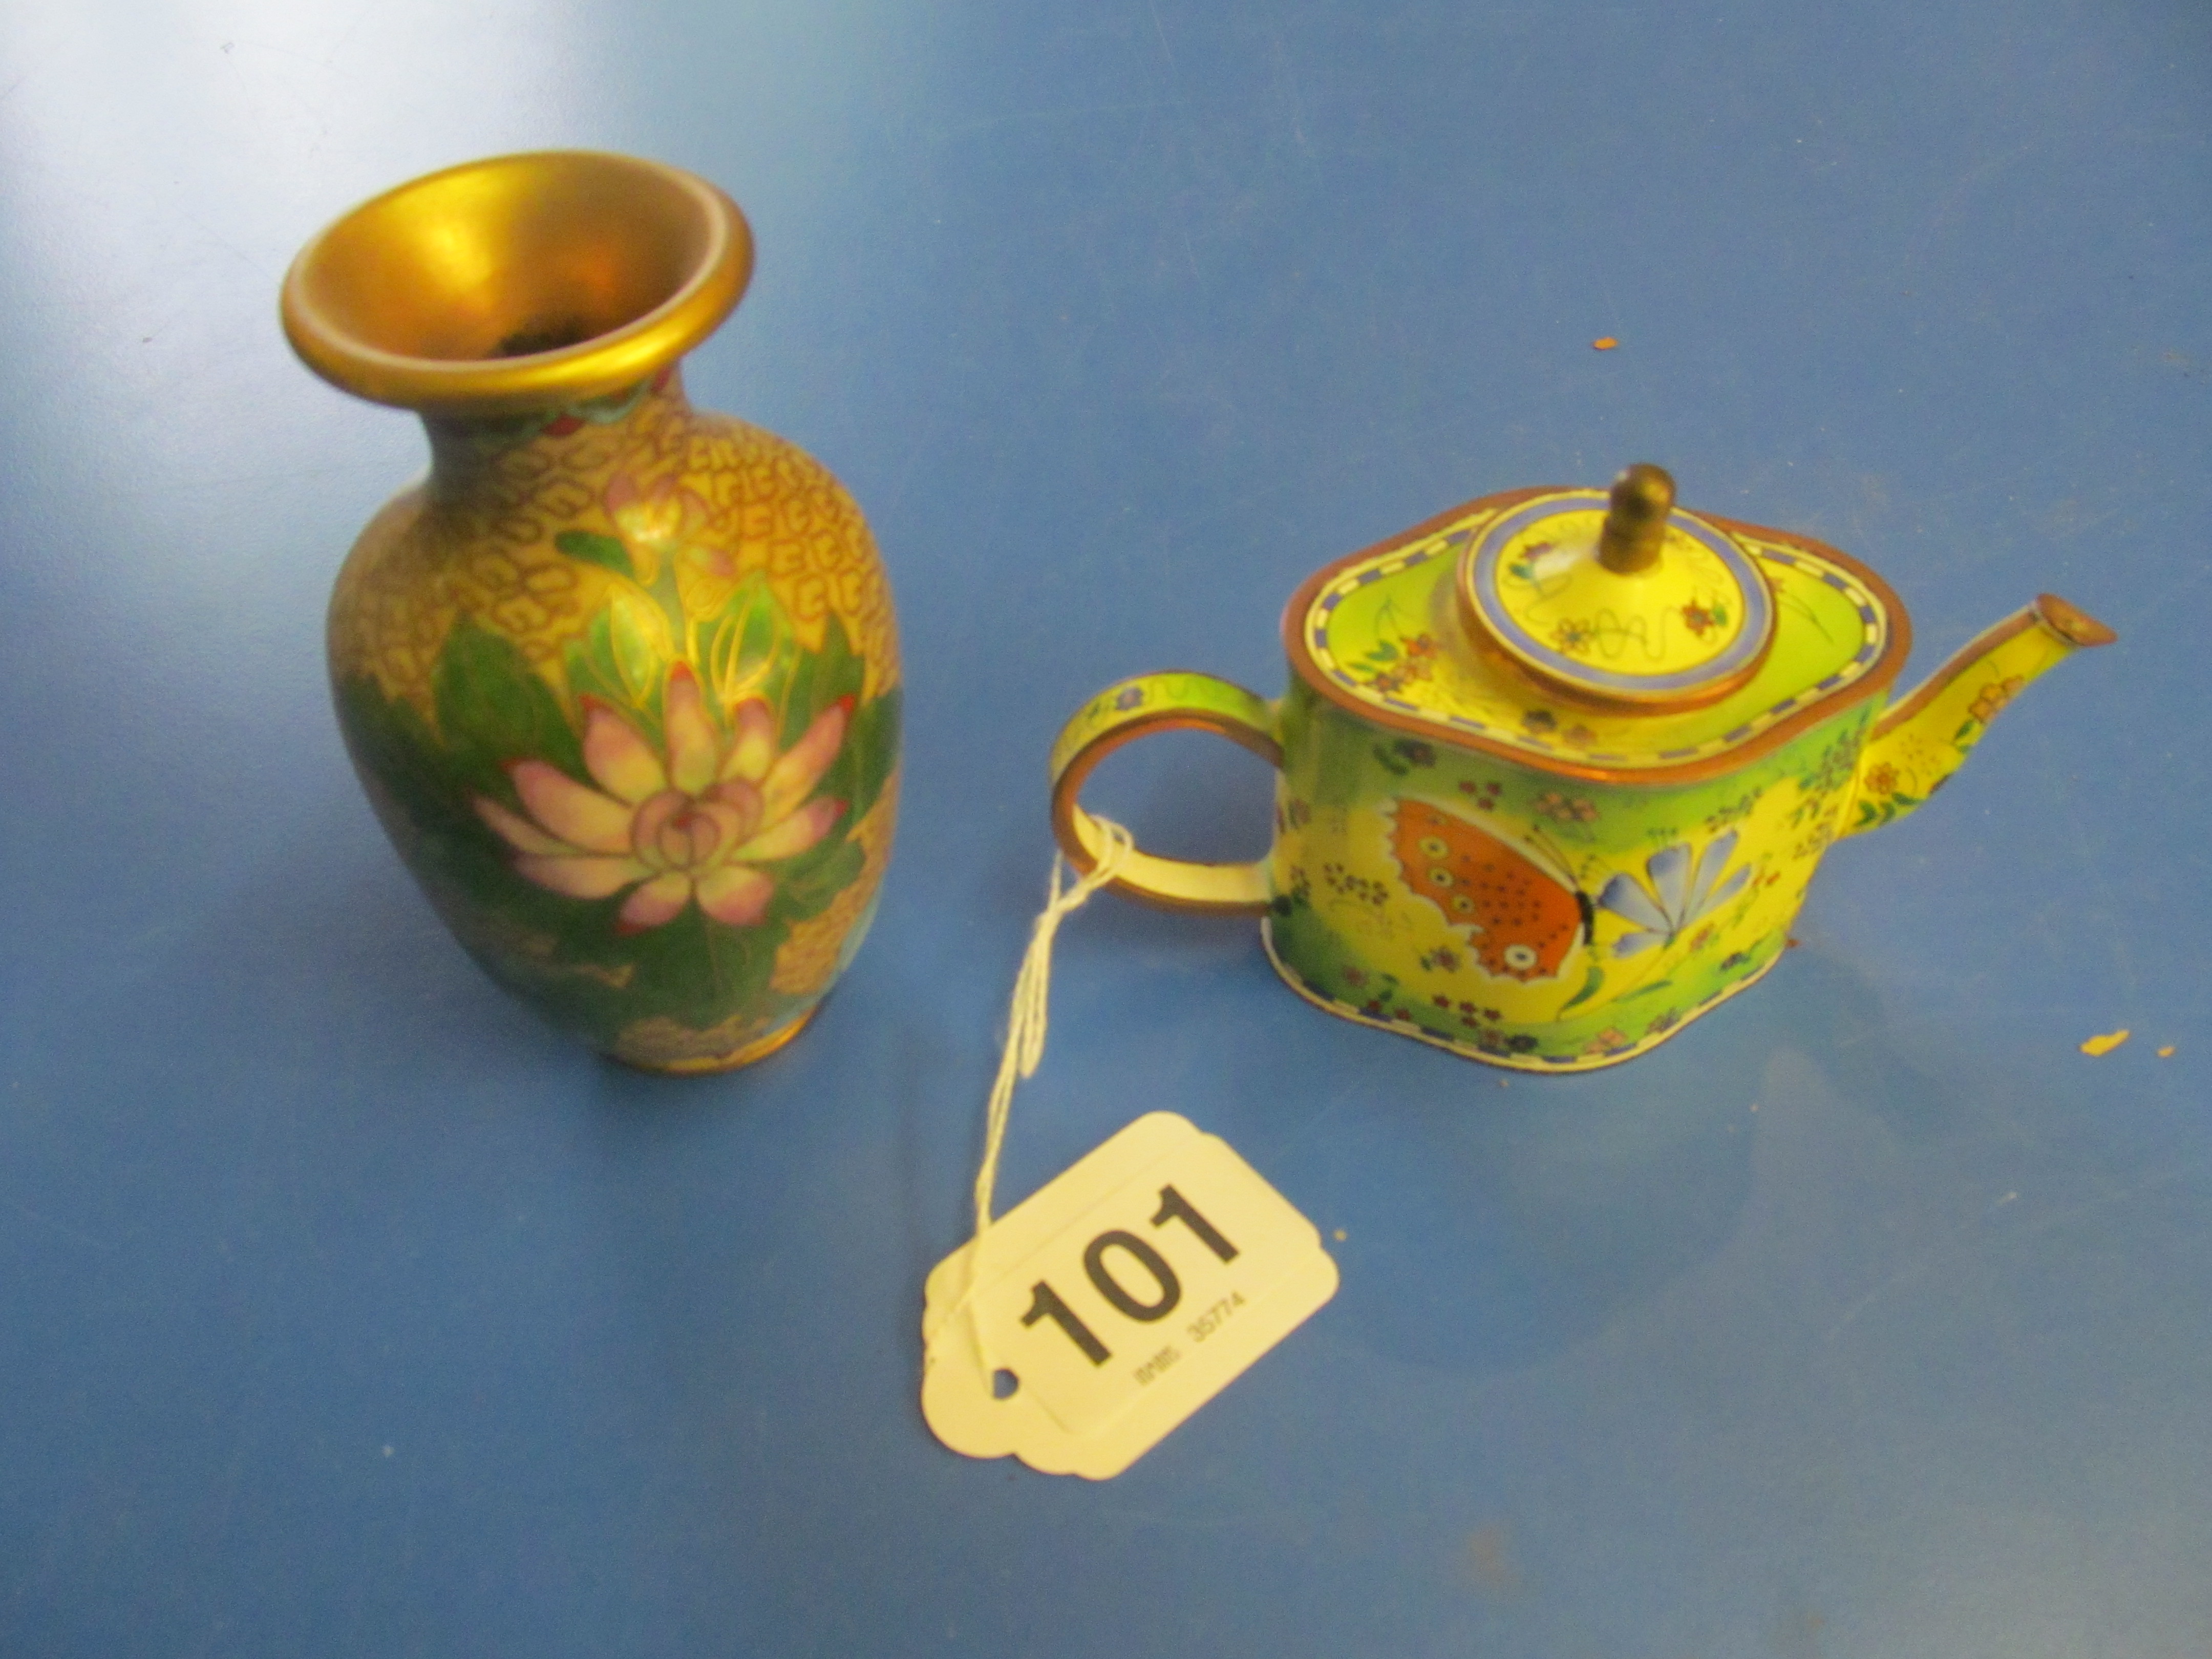 A cloisonné miniature teapot and a vase